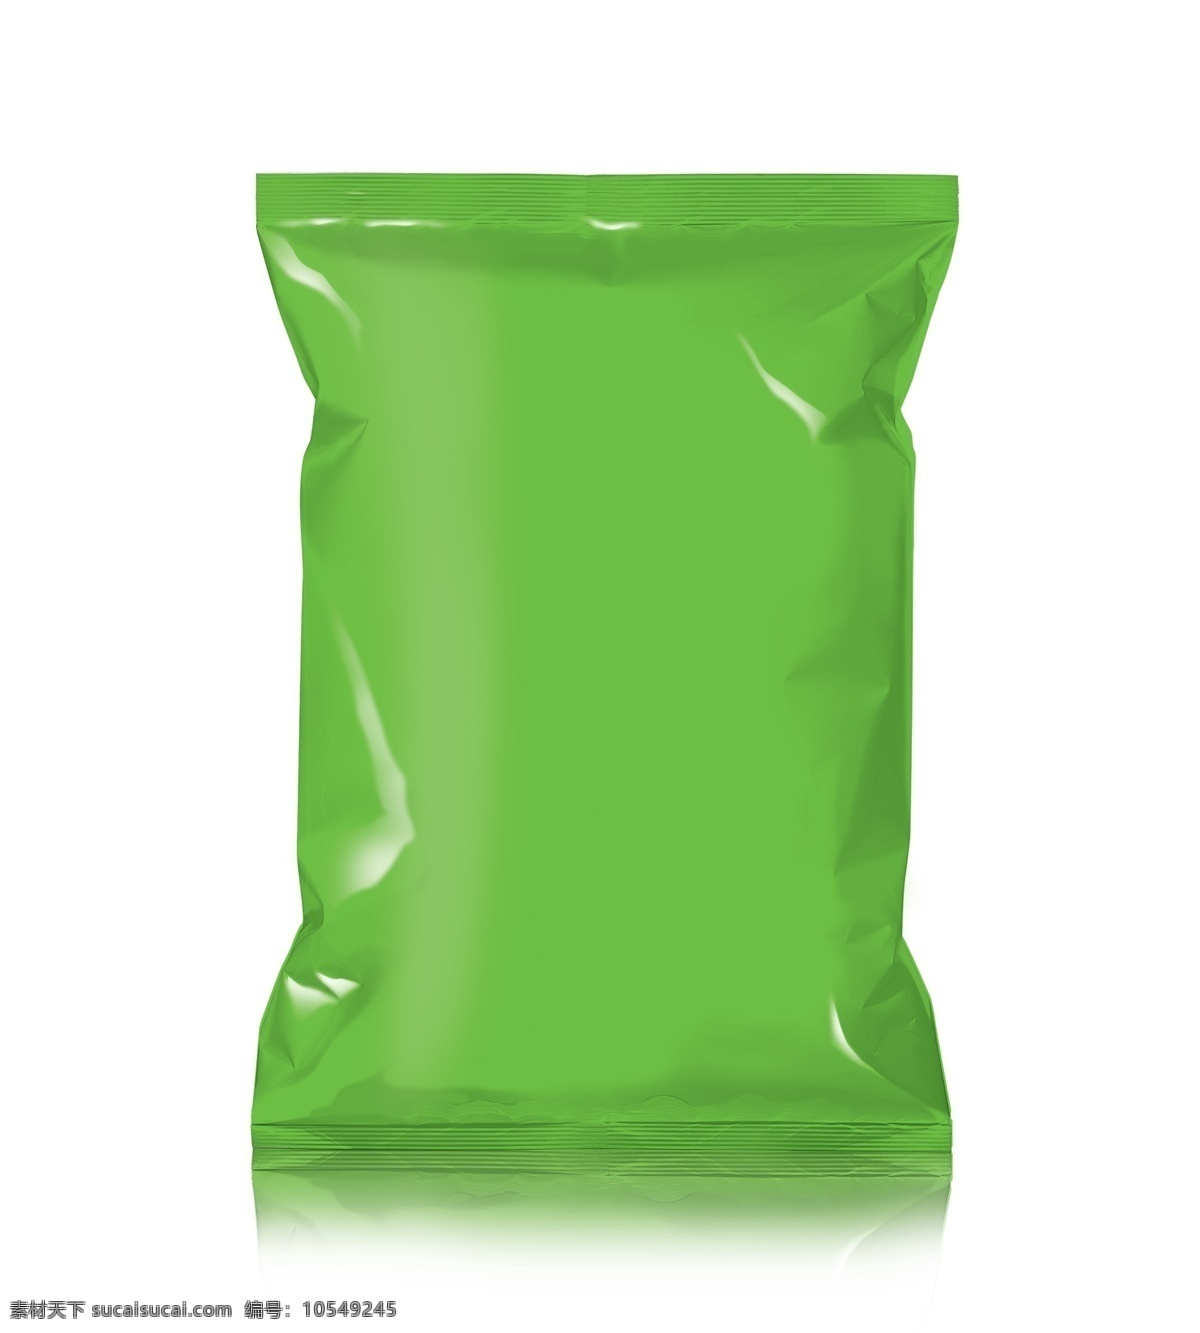 食品袋 分层 模板 样机 食品袋子 食品包装袋 零食包装袋 绿色 智能对象 可替换 完美替换超清 大尺寸 3d 效果图 3d设计 3d作品